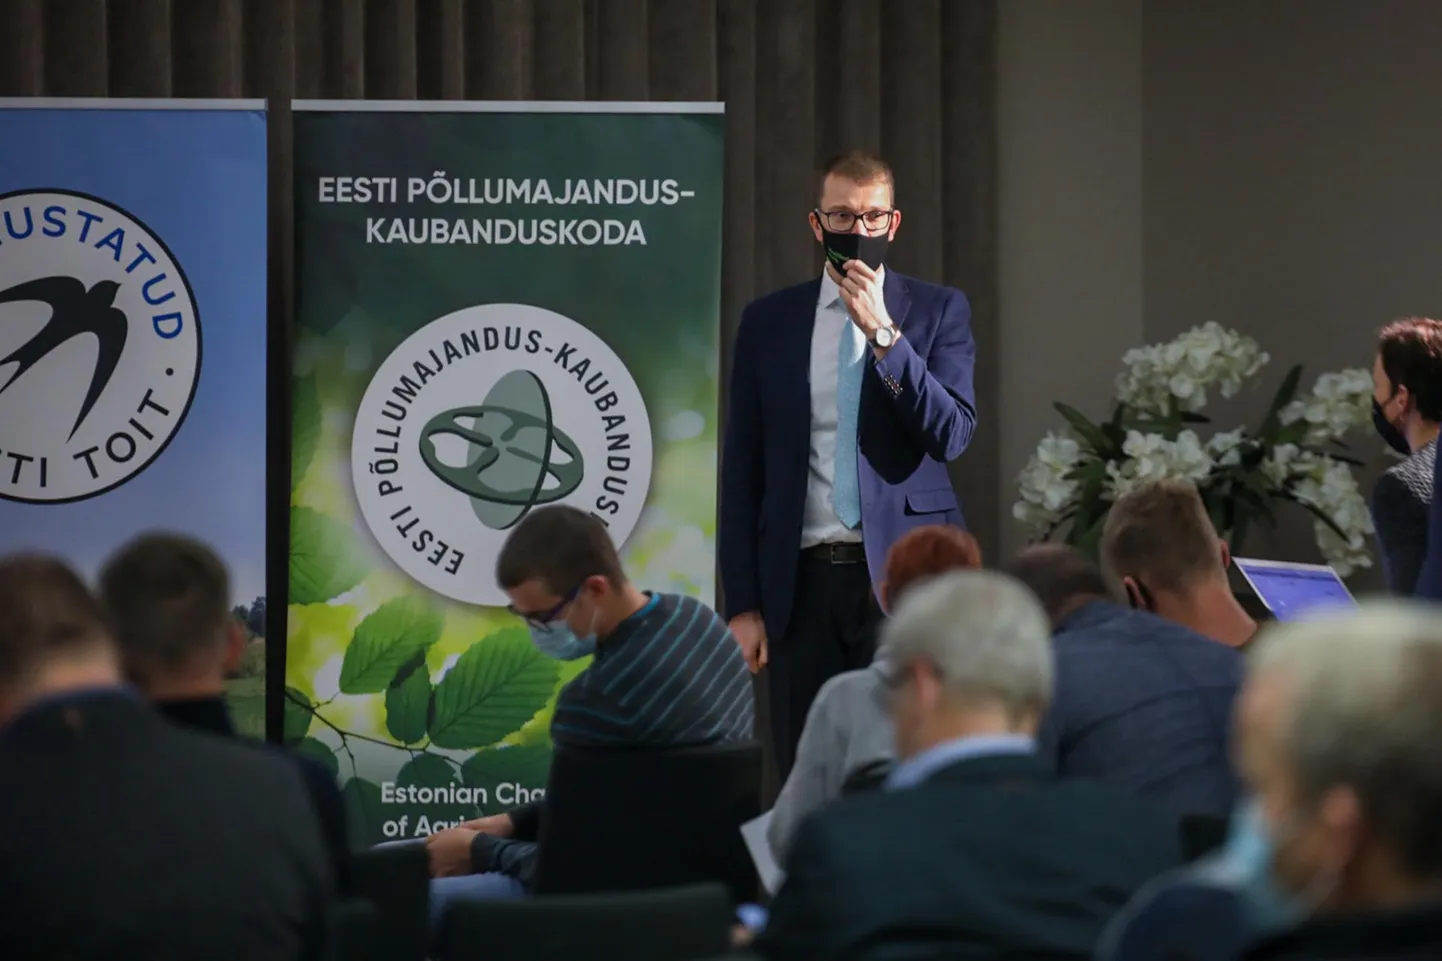 Eile kogunesid Rakveres Aqva konverentsikeskuses Eestis lihatootmisega seotud inimesed: loomakasvatajad, lihatöötlejad, kaupmehed, teadlased – kõik need, kellele on oluline kodumaise liha tootmise jätkusuutlik tulevik. Foorumil räägiti lihasektori strateegilisest rollist, globaalsetest arengusuundadest, ühistegevusest ja lihasektori arengut mõjutavatest teguritest. Täna toimub konverentsikeskuses piimafoorum.